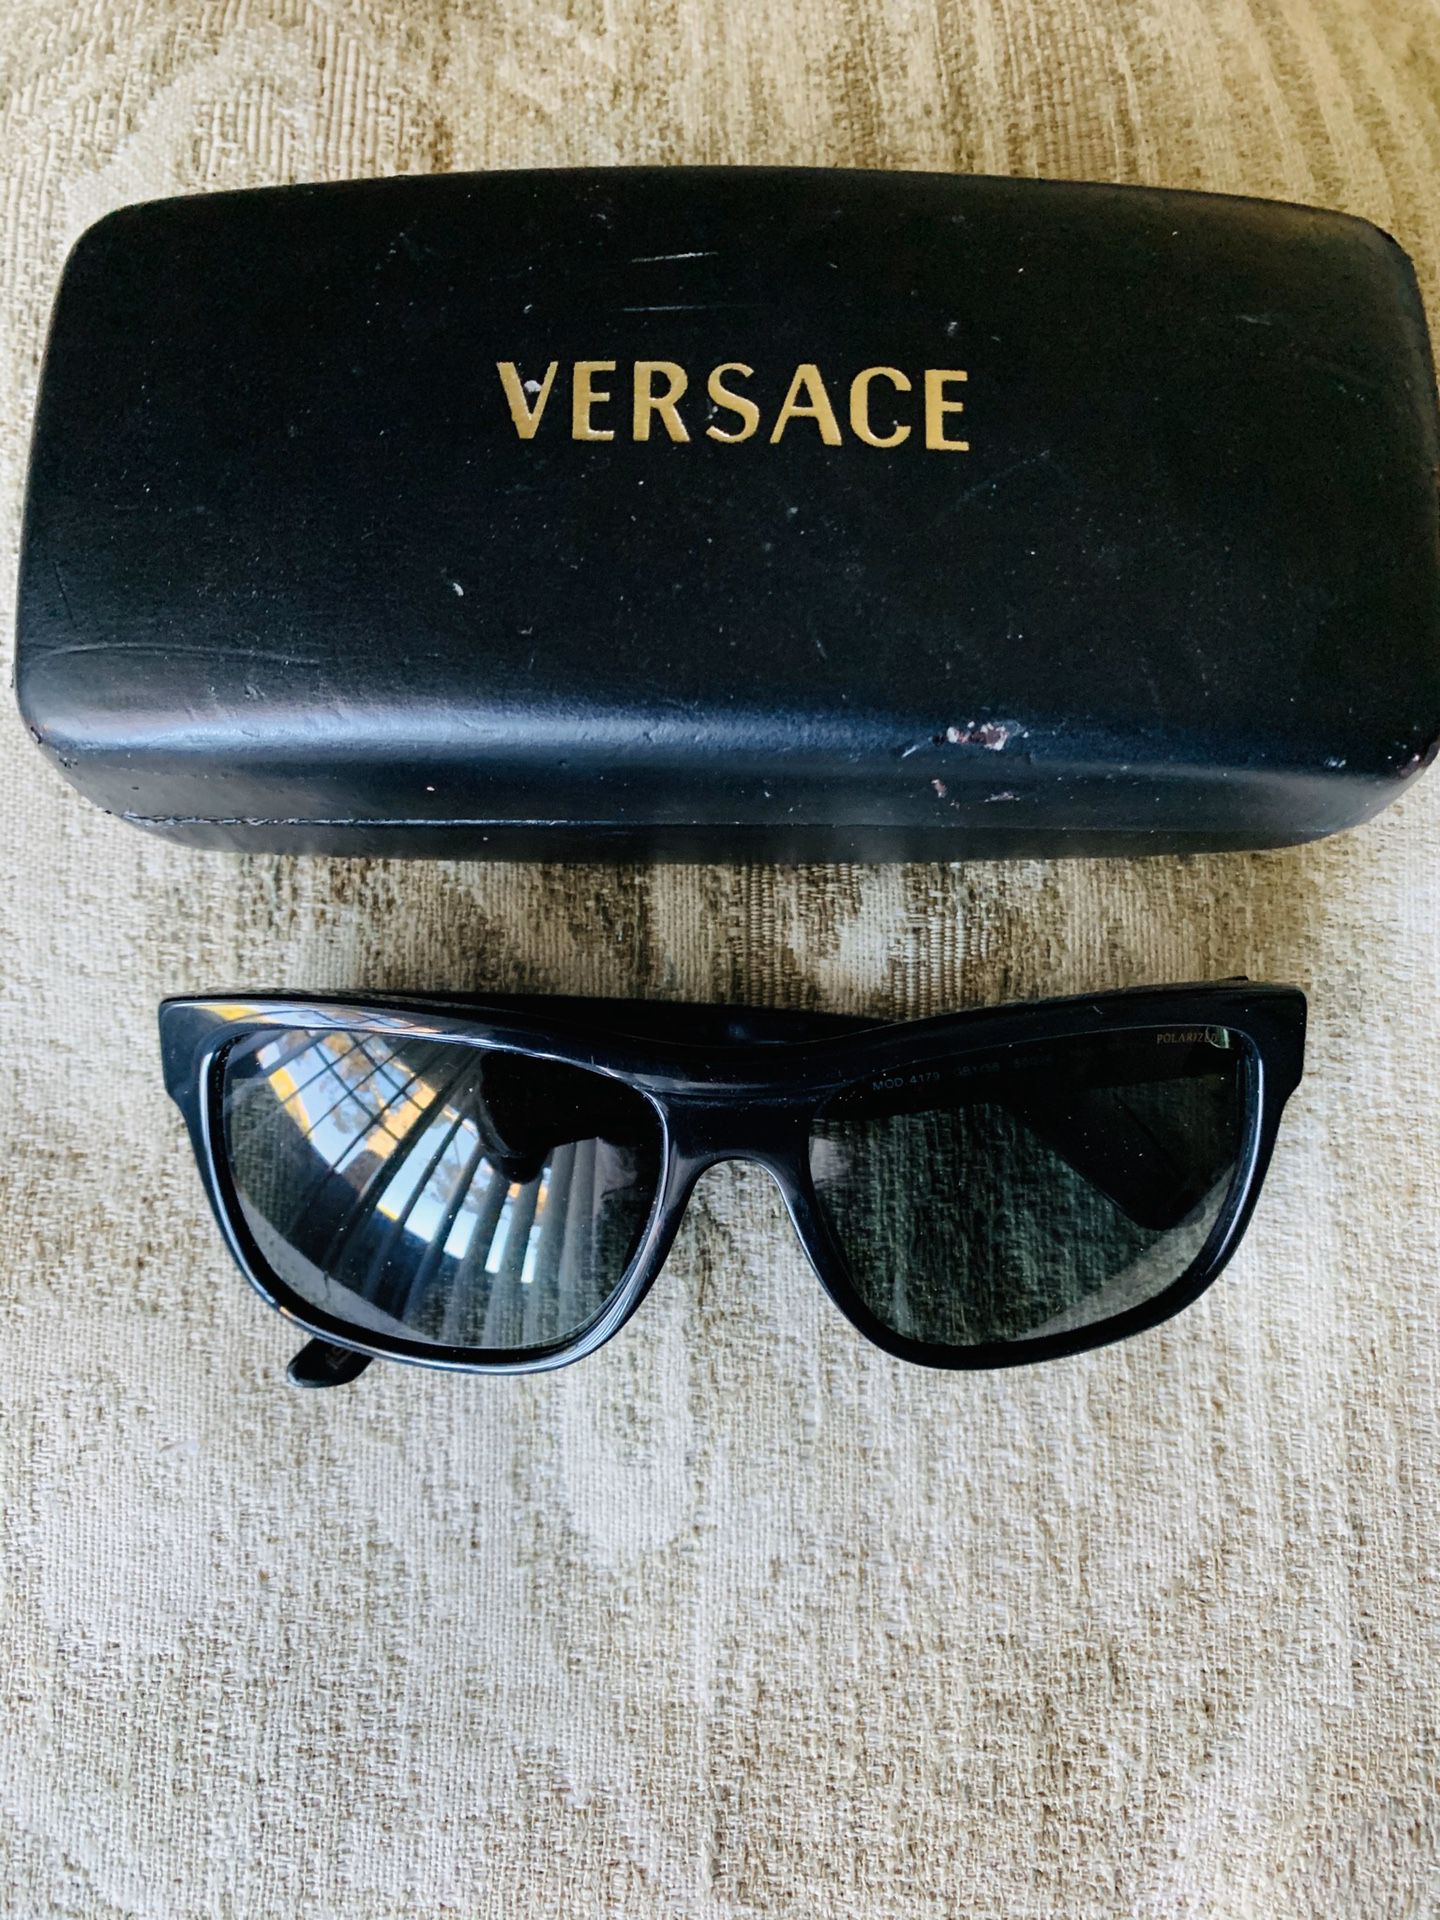 Versace men’s polarized sunglasses model: 4179 for $75